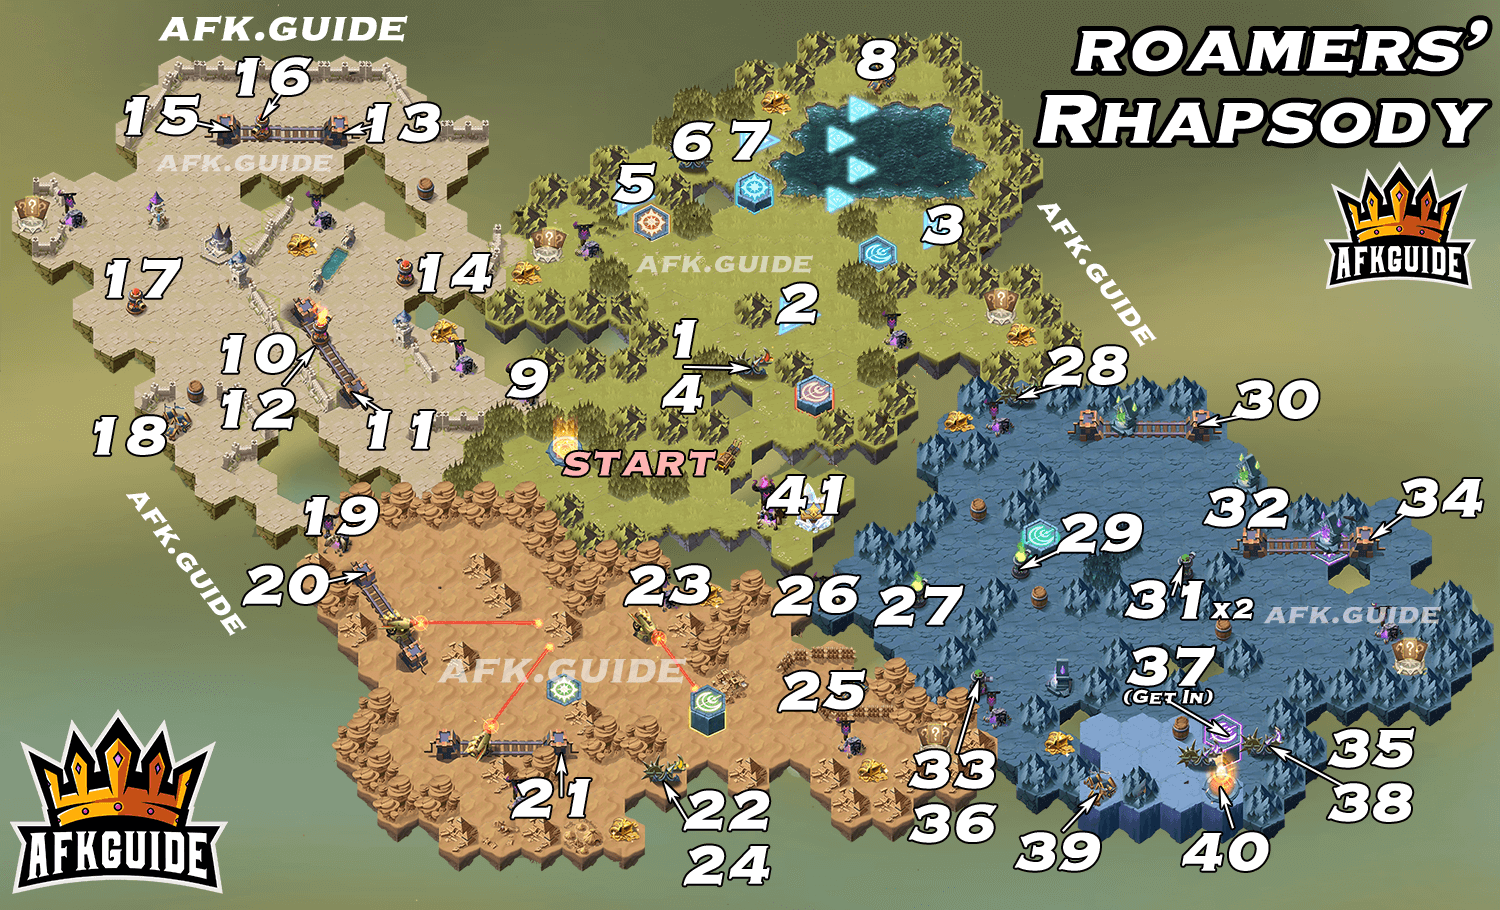 roamers rhapsody map guide